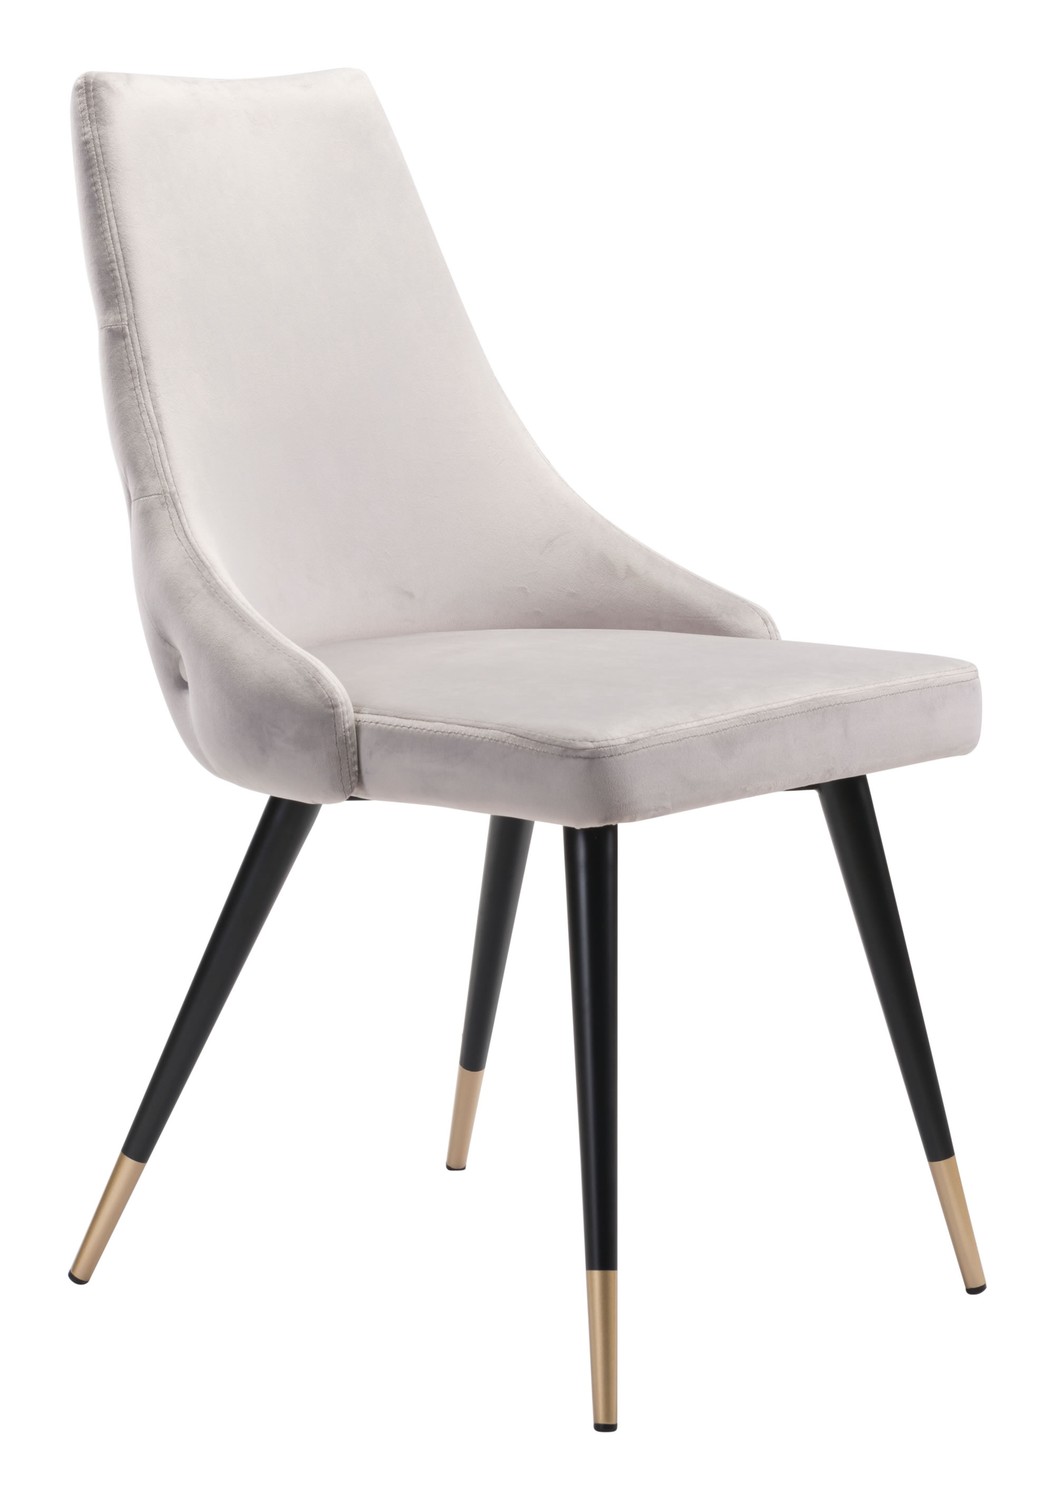 20.5" x 24.6" x 34.8" Gray, Velvet, Stainless Steel, Dining Chair - Set of 2